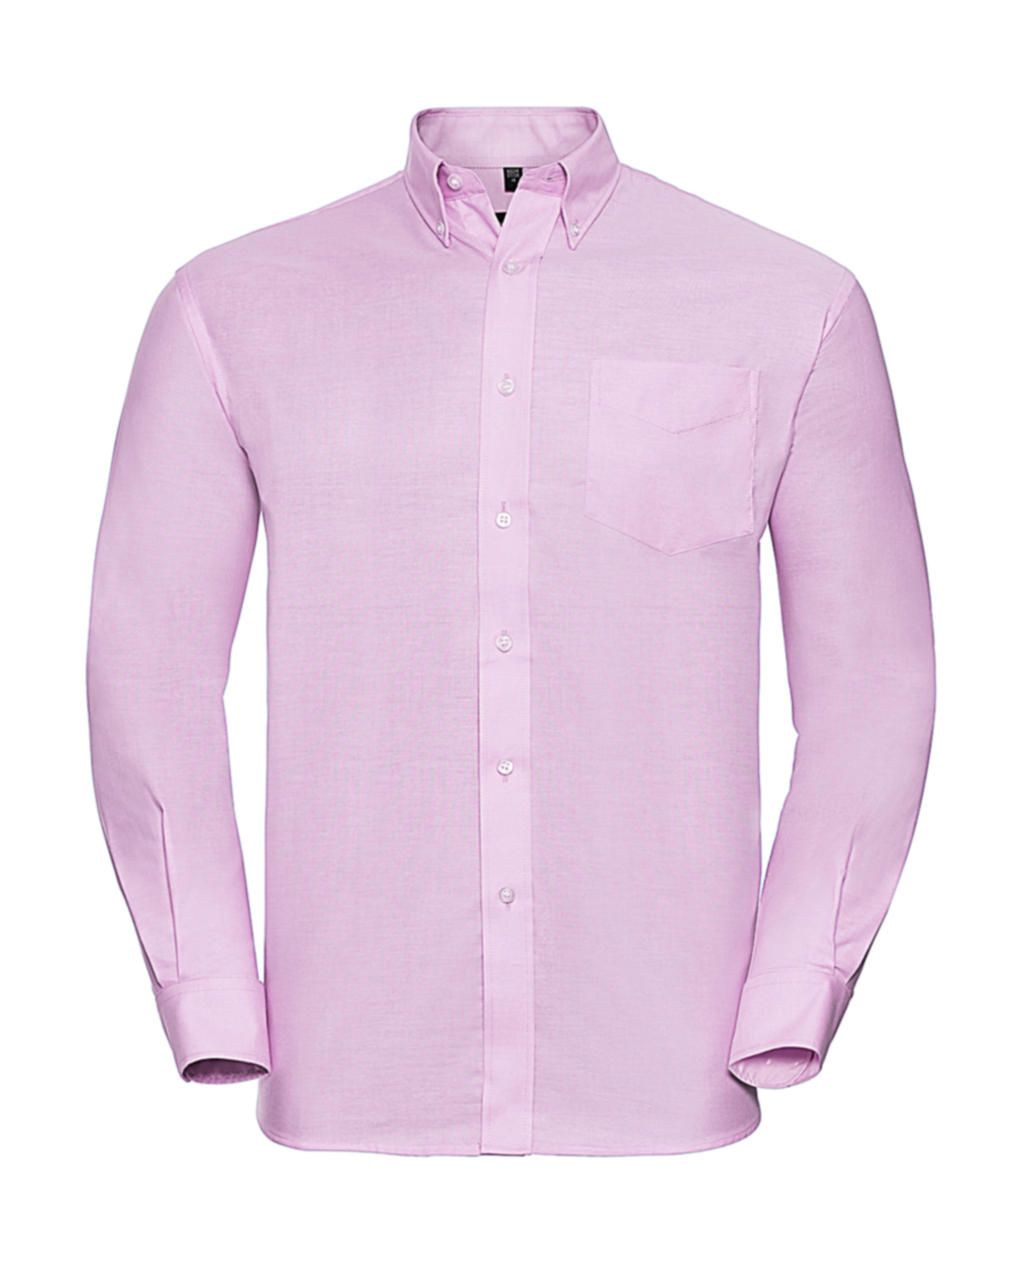 Košile Oxford s dlouhým rukávem Velikost: S, Barva: Classic Pink